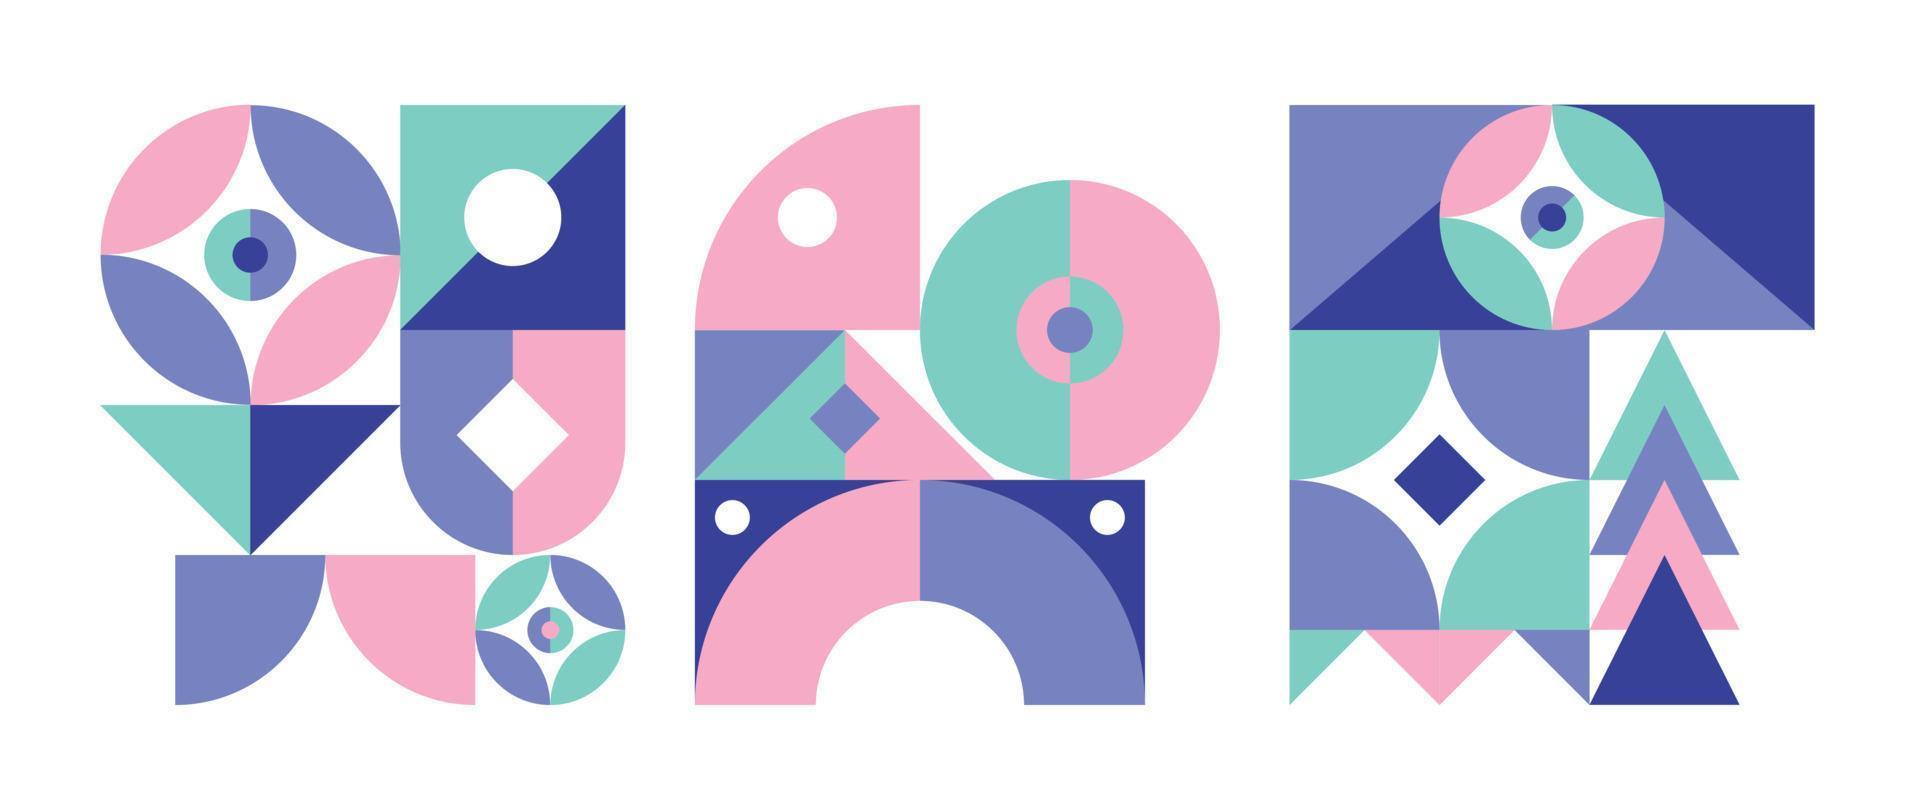 conjunto de elementos de patrón geométrico en estilo de mediados de siglo. círculo abstracto retro, forma cuadrada y triangular con color azul, rosa, verde pastel. diseño moderno para portada, tarjeta de visita, afiche, arte mural. vector